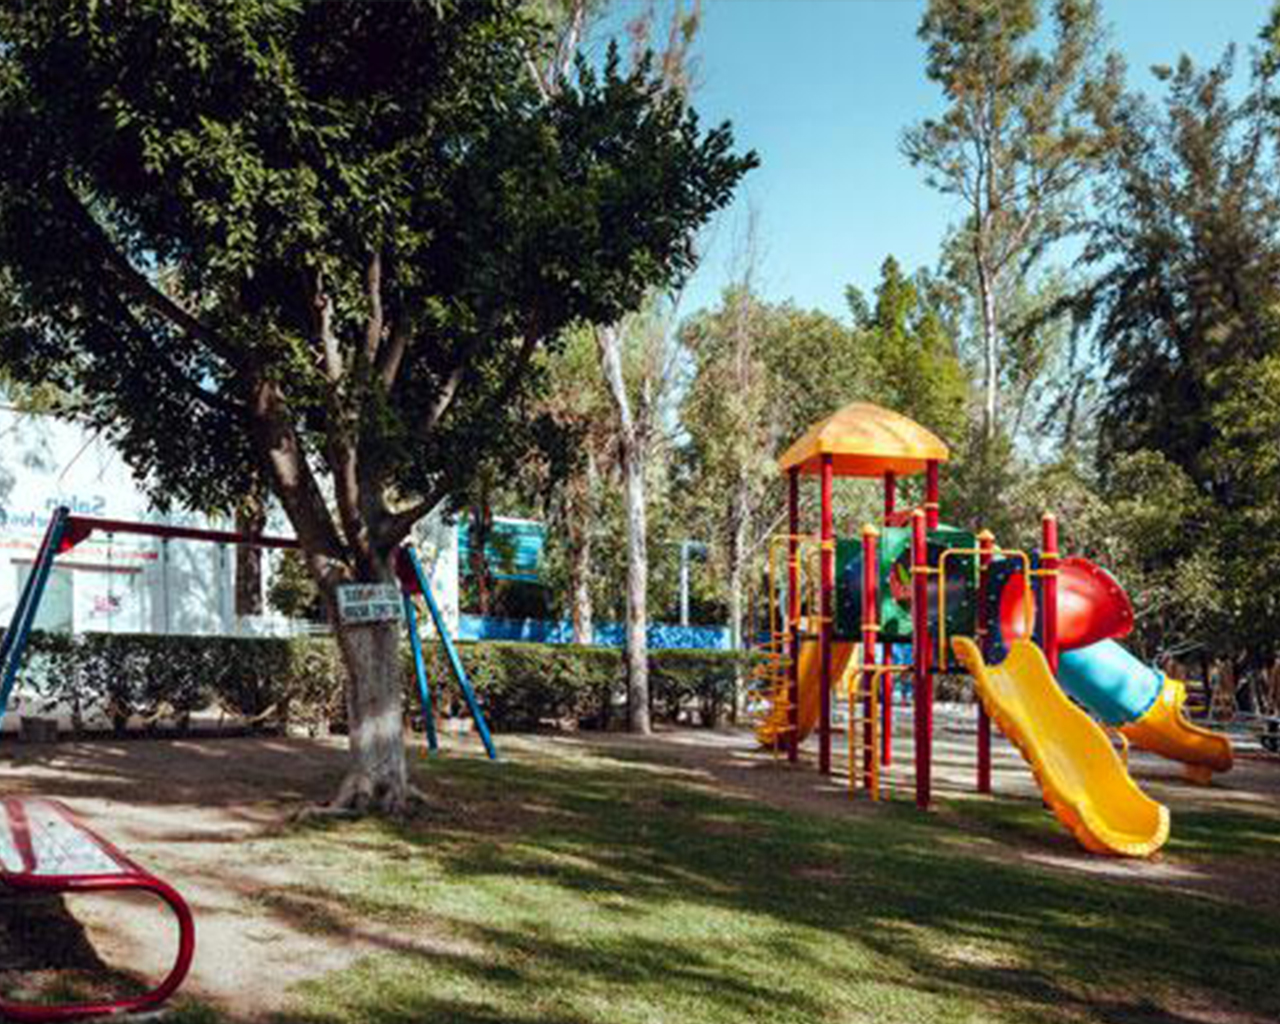 El parque está lleno de colores vibrantes, estructuras lúdicas y una variedad de actividades atractivas para los niños